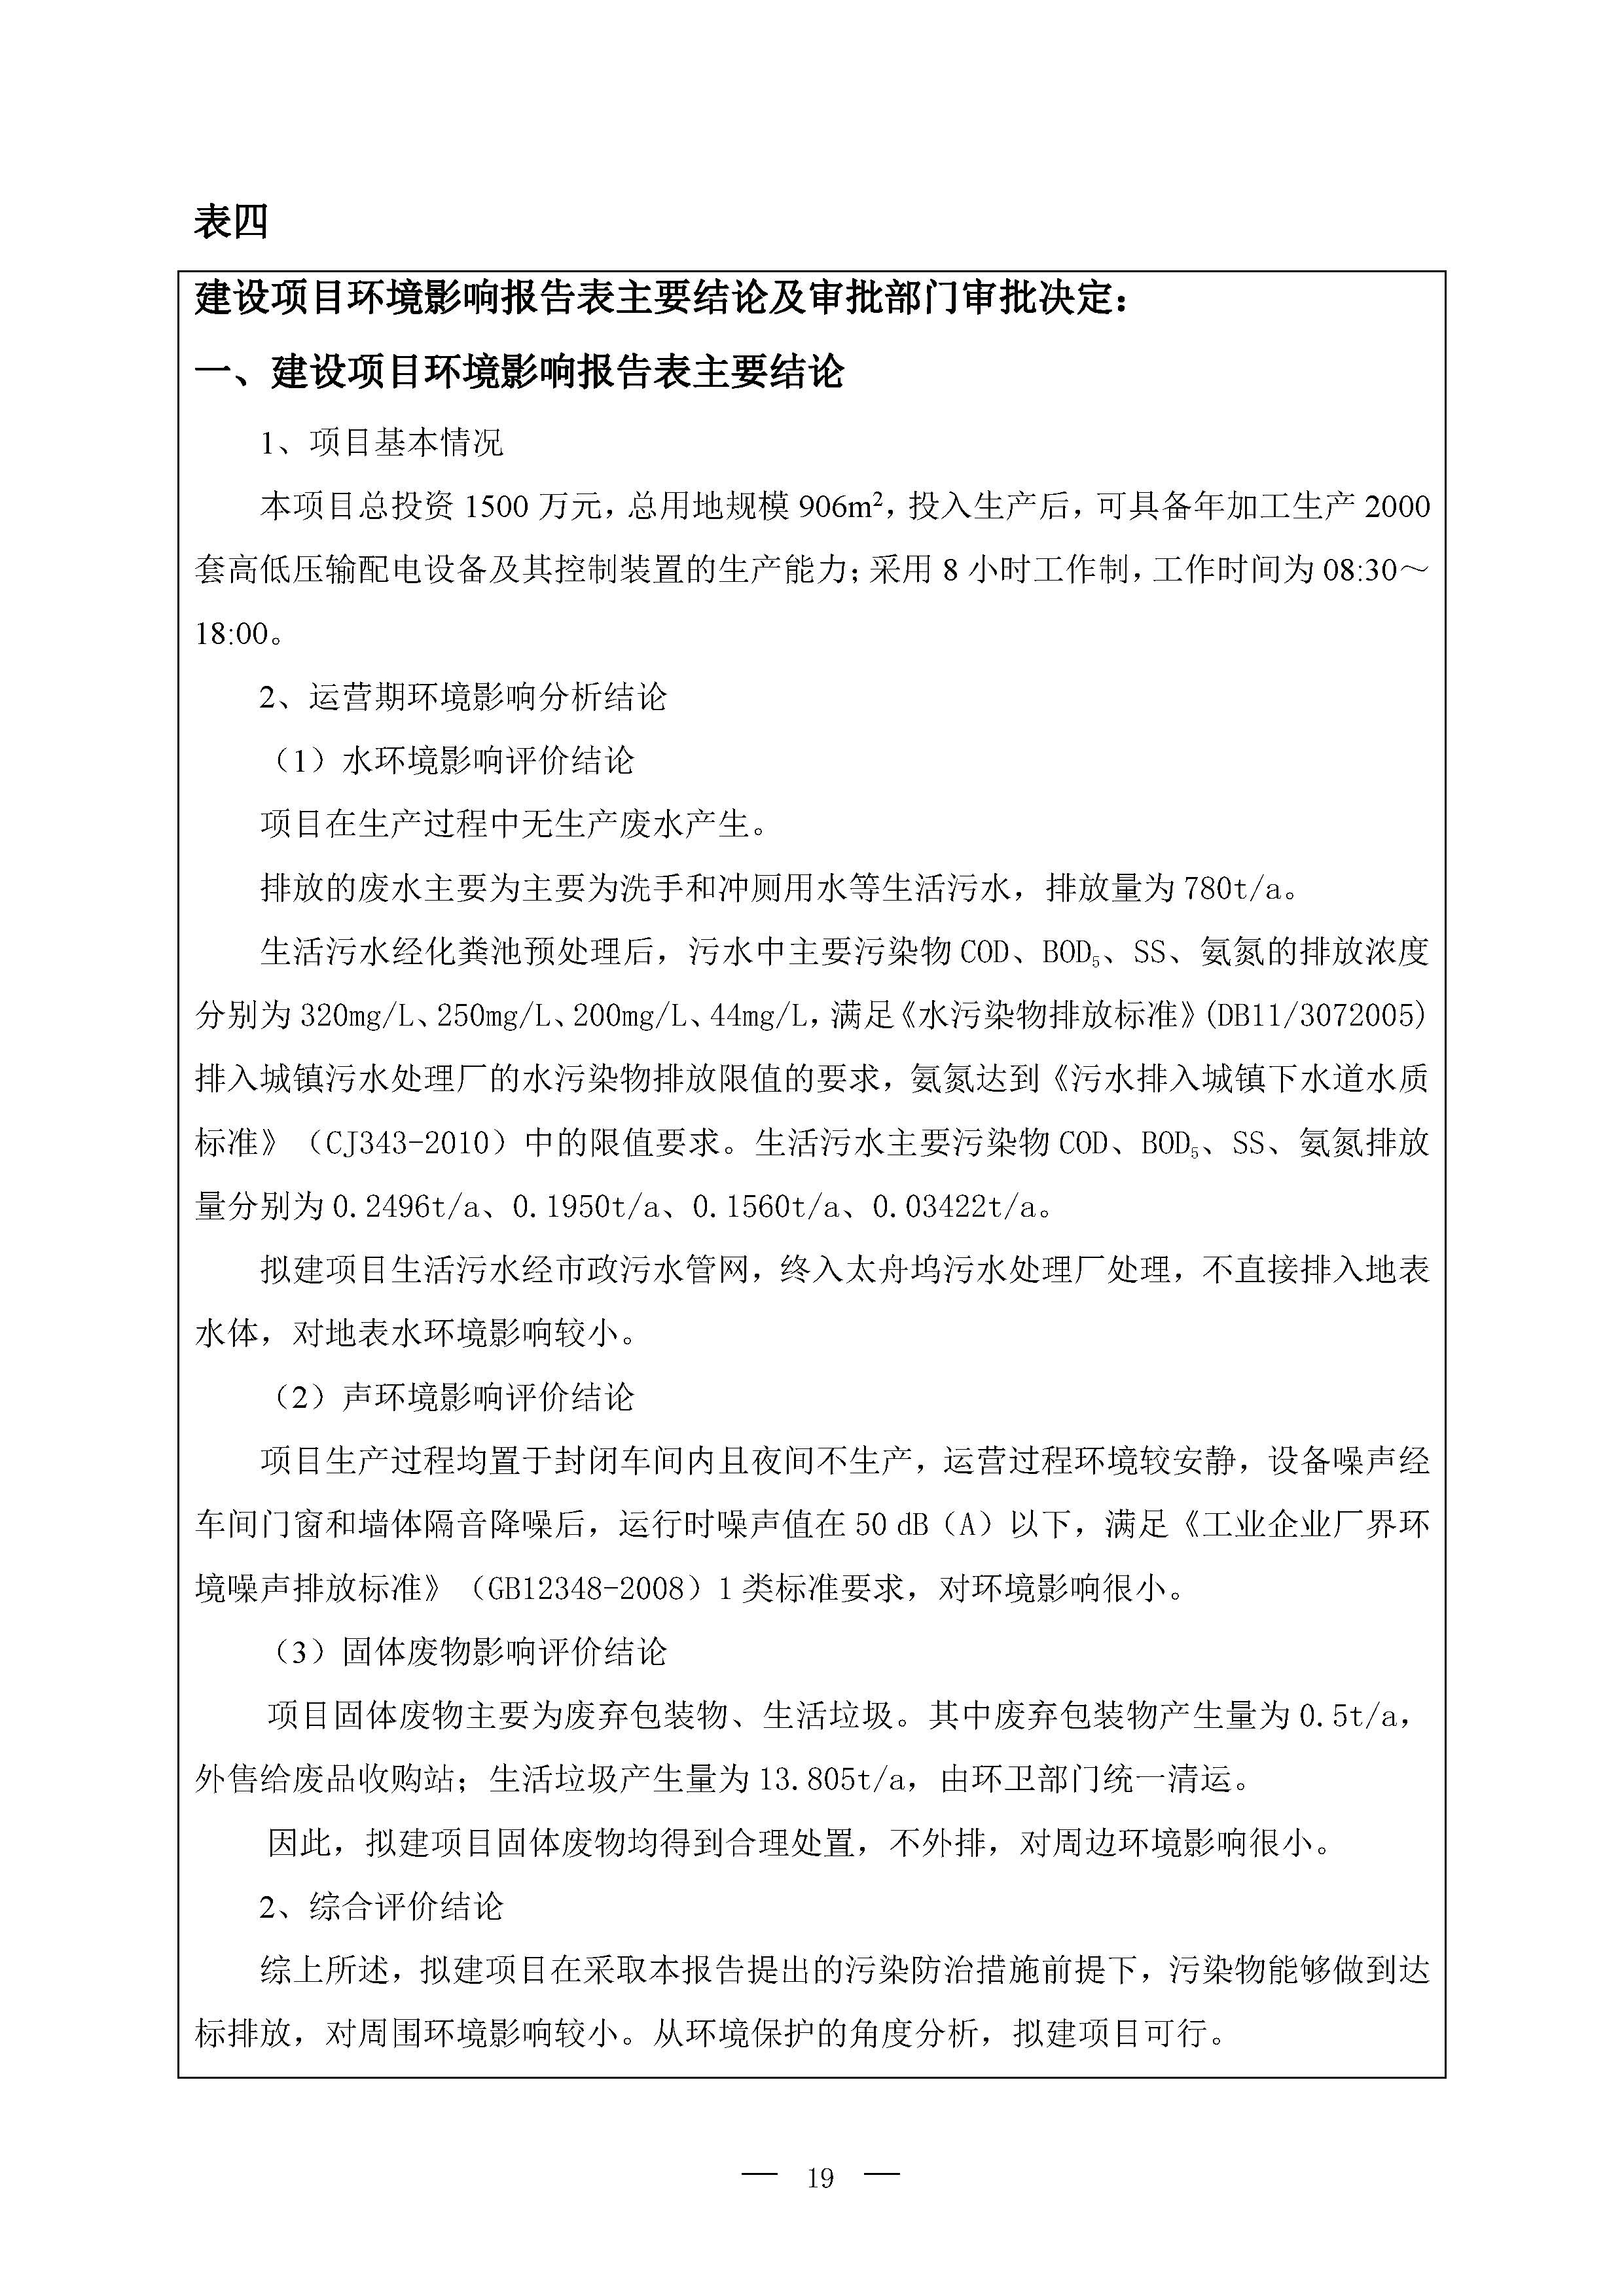 北京博瑞莱智能科技集团有限公司项目竣工环境保护验收监测报告全本公示(图23)